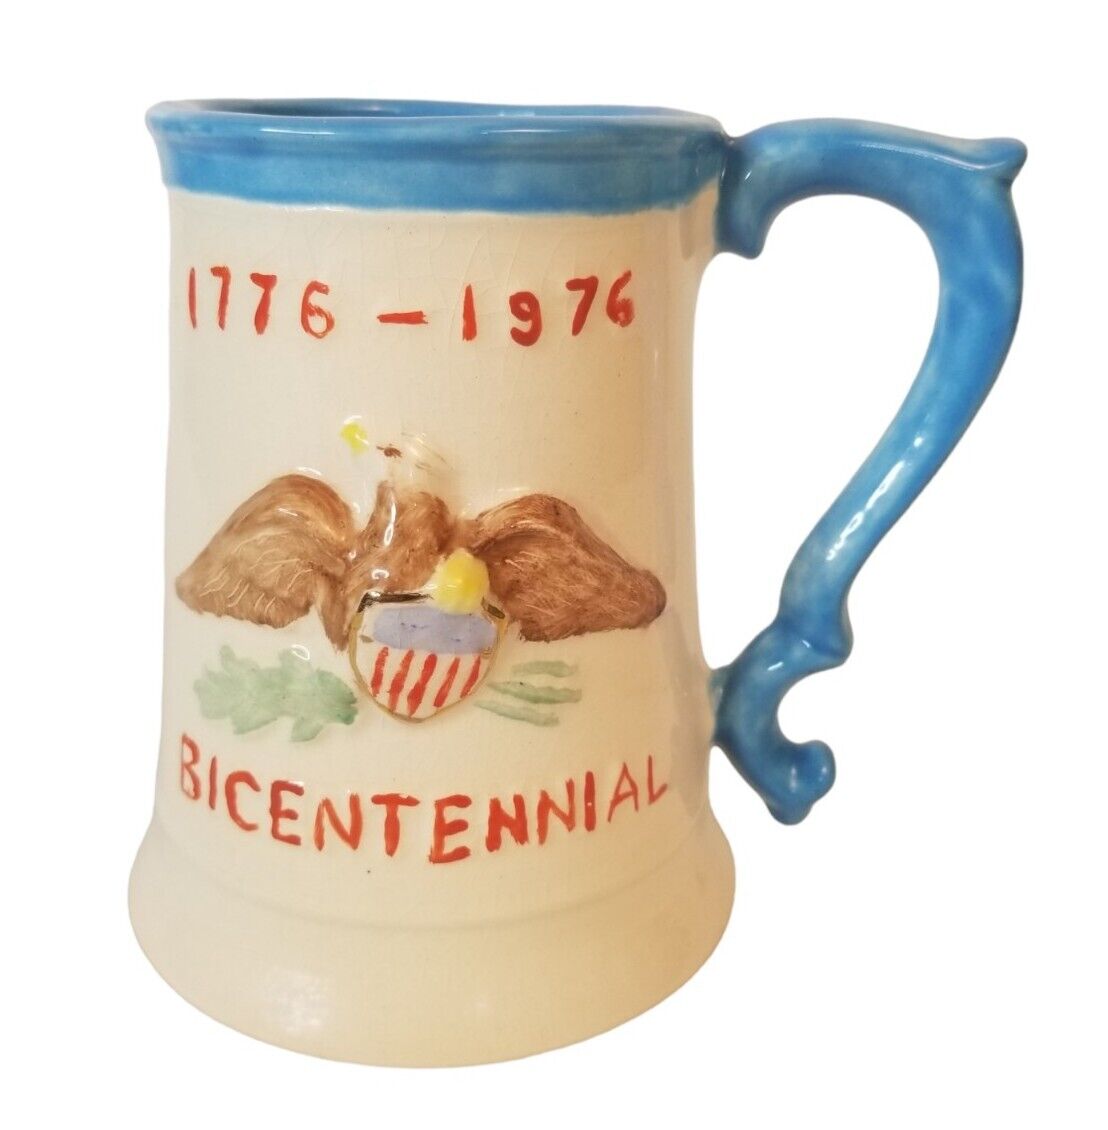 Vintage USA 1776 - 1976 Bicentennial Signed Mug blue, beige